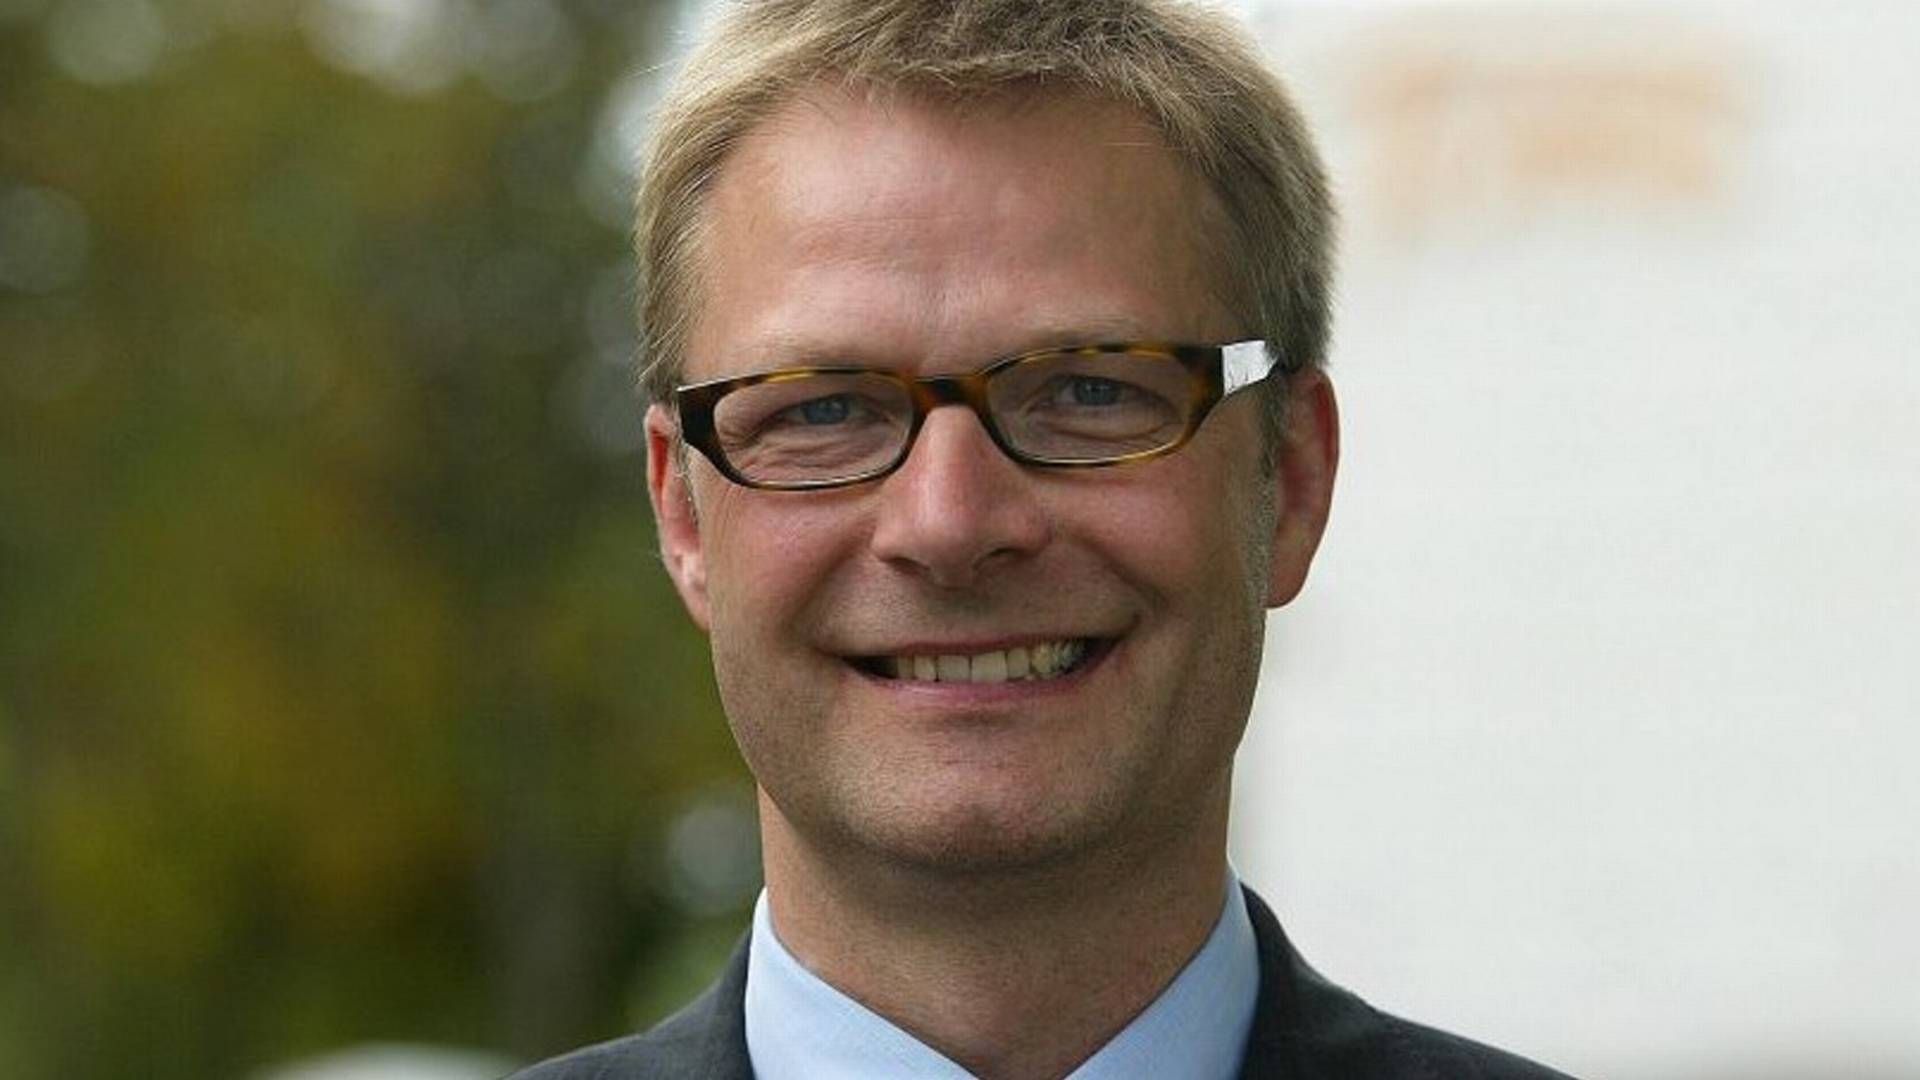 Erhvervsmanden Henrik Frisch har udsigt til at blive bestyrelsesformand i Nordicom, hvis redningsplanen fra svenske Kvalitena vedtages på generalforsamlingen. | Foto: PR